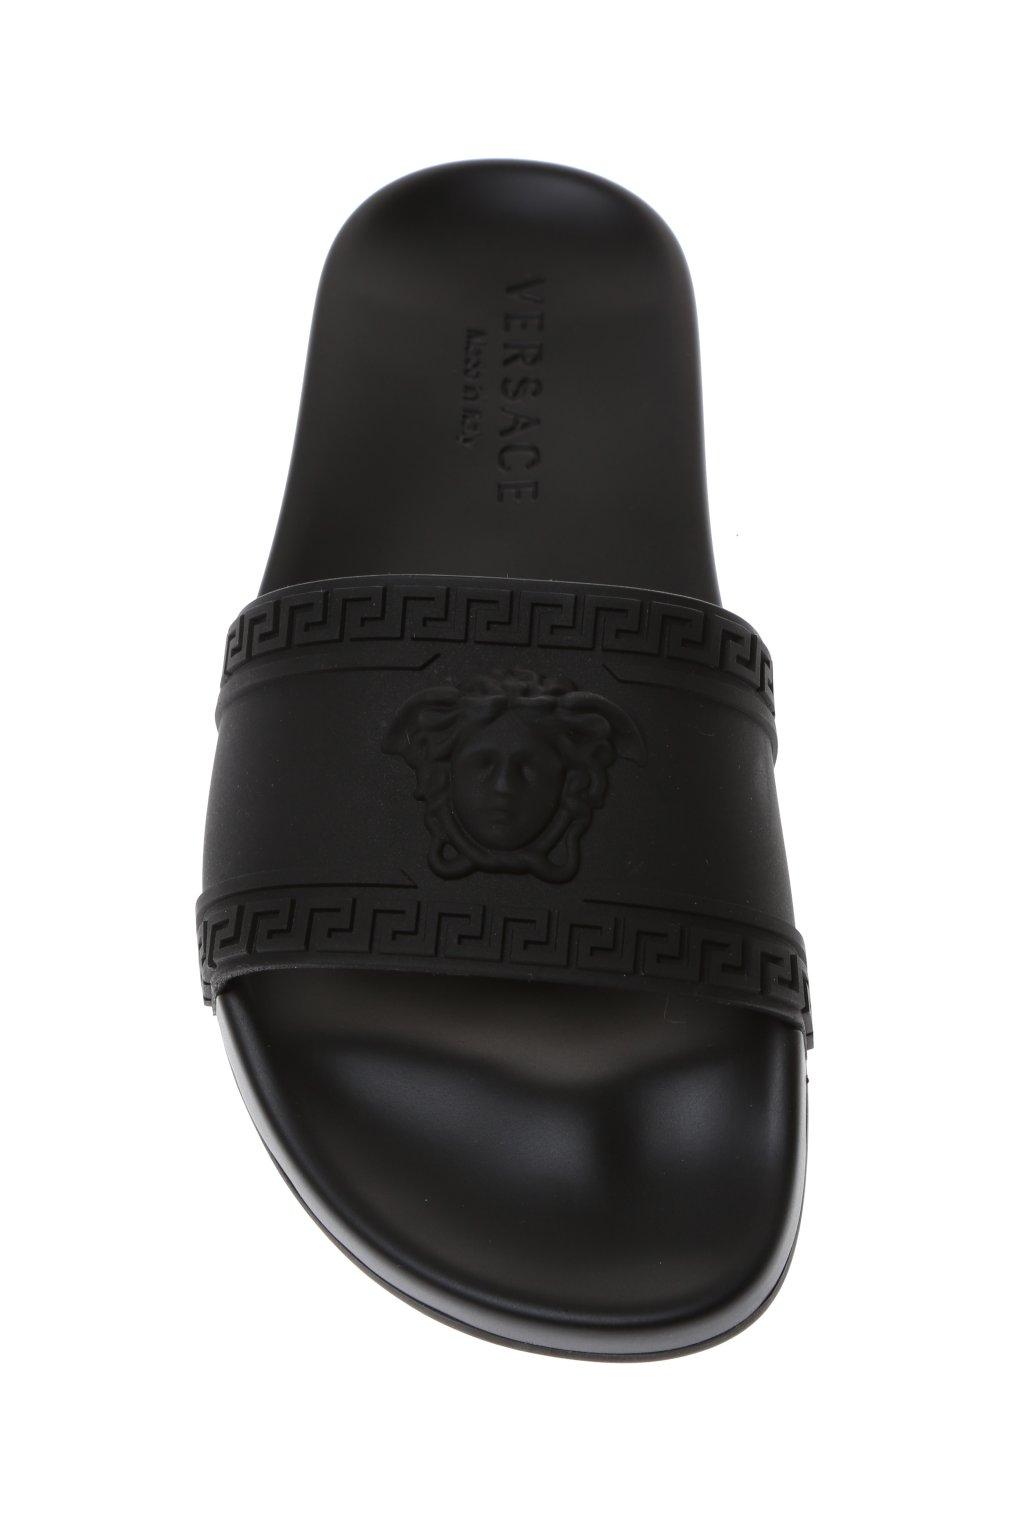 Versace Rubber Logo Sliders Black for Men - Lyst